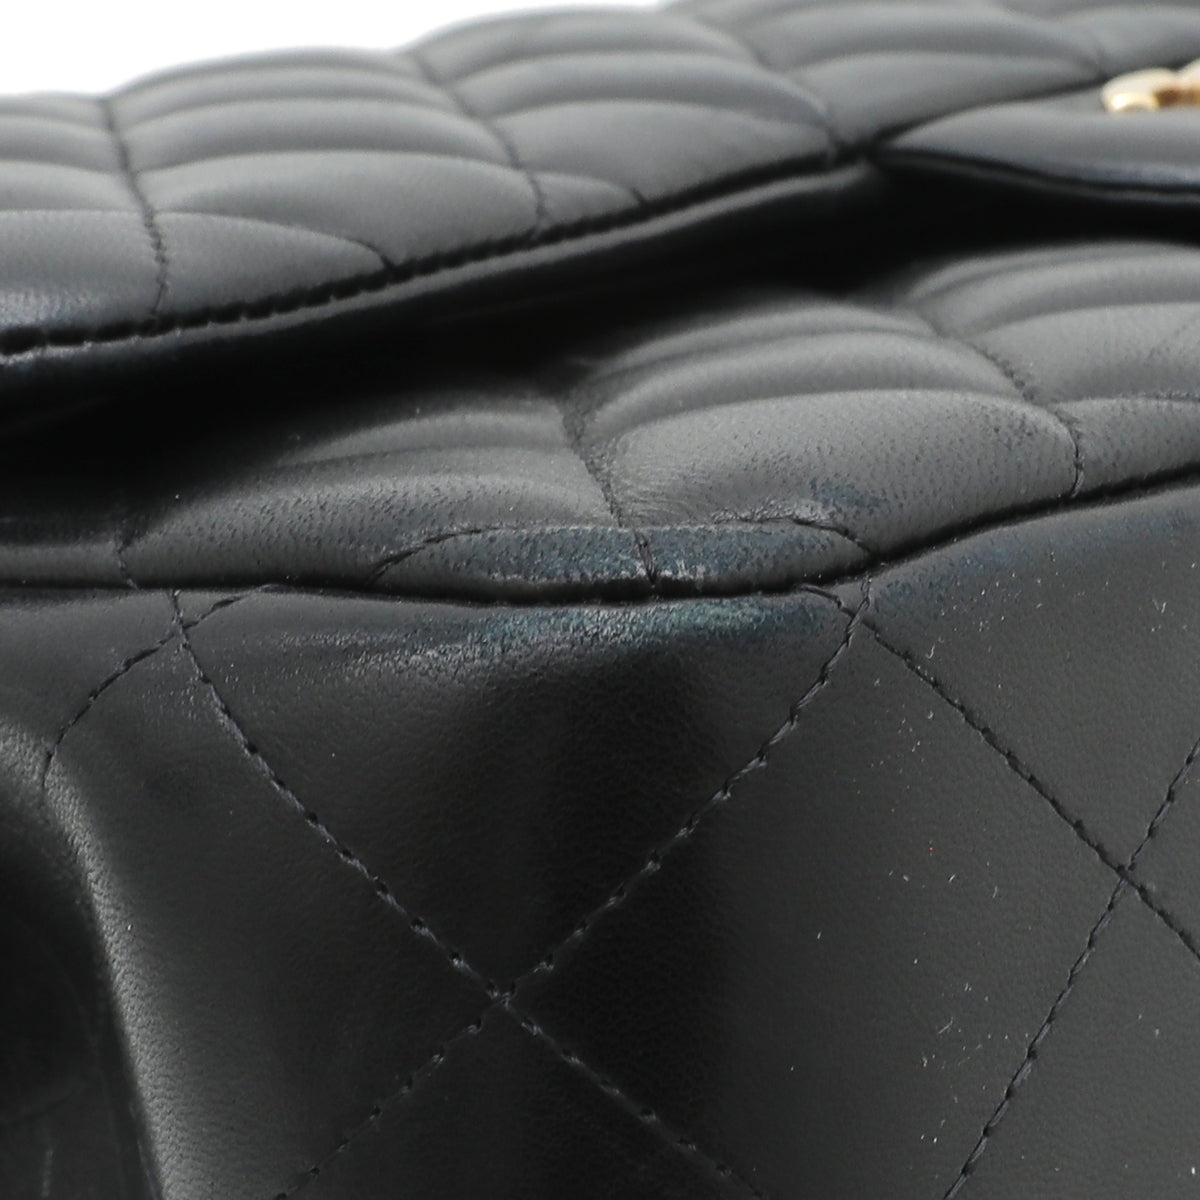 Chanel Black Double Flap Jumbo Bag